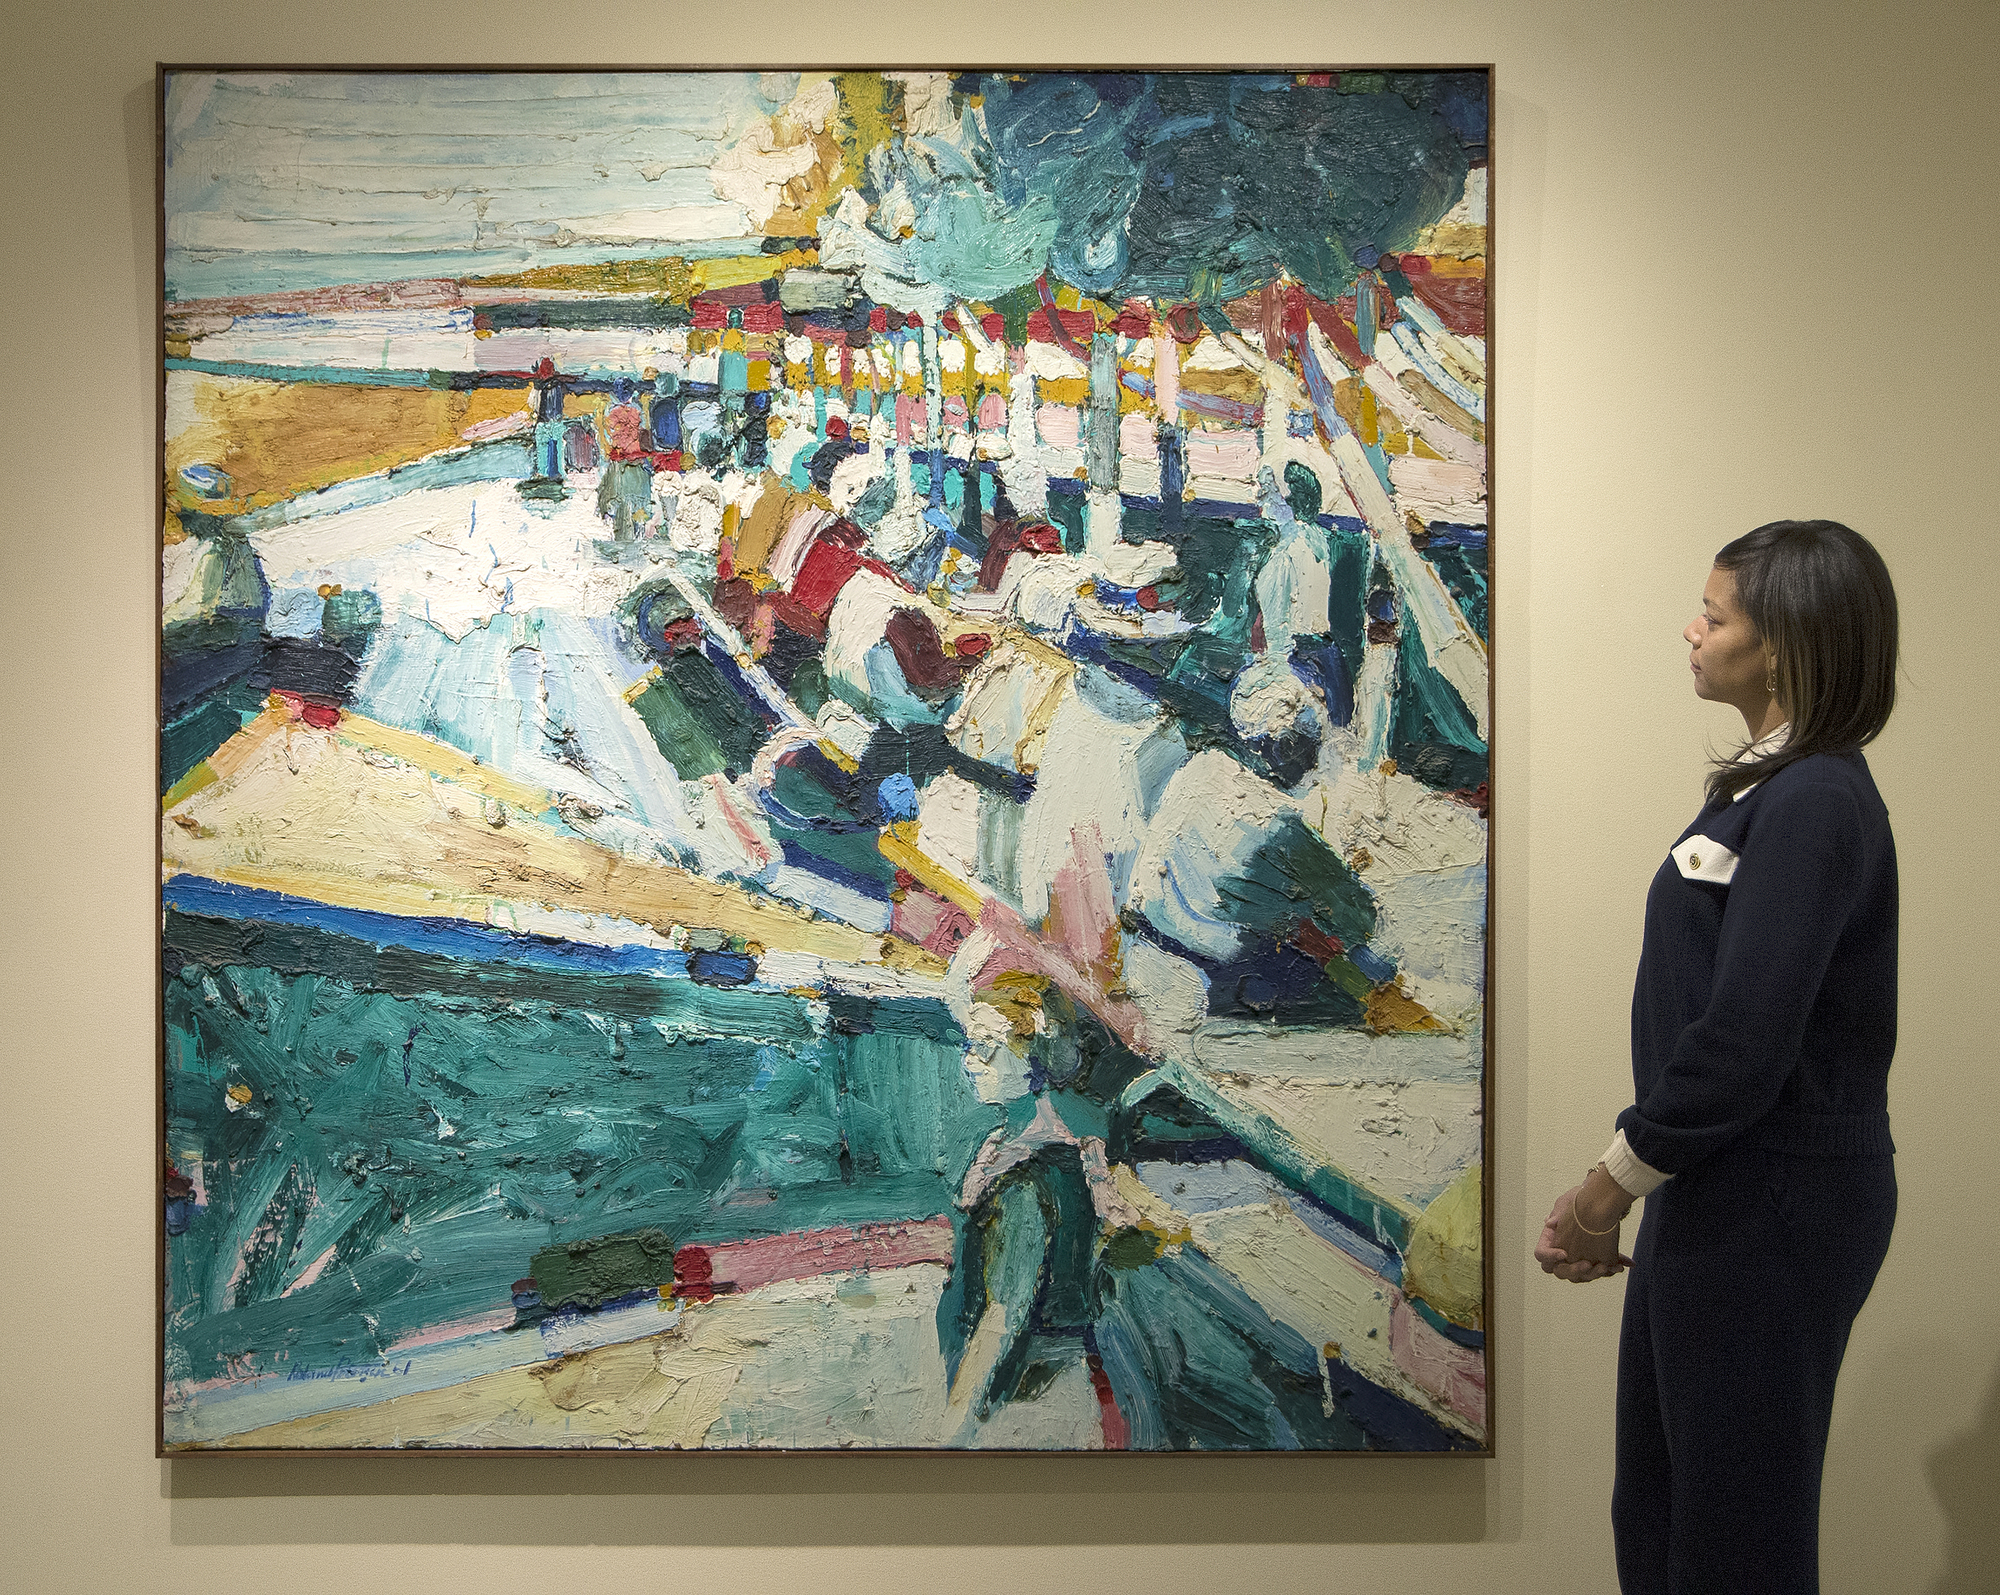 ベイエリアのアーティスト、ローランド・ピーターセンのランチョンは、1961年のキャンバスに油彩を描いた、彼の最も有名なピクニックシリーズの重要な年です。この時代からの彼の作品は、濃厚なインパストと豊かな色彩が特徴です。ハンス・ホフマンとの研究に深い影響を受け、ピーターセンは抽象化を試み、ここでは抽象的で比喩的なスタイルをブレンドしました。ピーターセンが35歳の時に描かれたランチョンは、1962年にニューヨークのシュペンプフリ・ギャラリーでの完売したワンマン・ショー、ロサンゼルスのエステル・ロブレスでの個展、グッゲンハイム・フェローシップなど、その時間内に位置しています。パリで勉強する